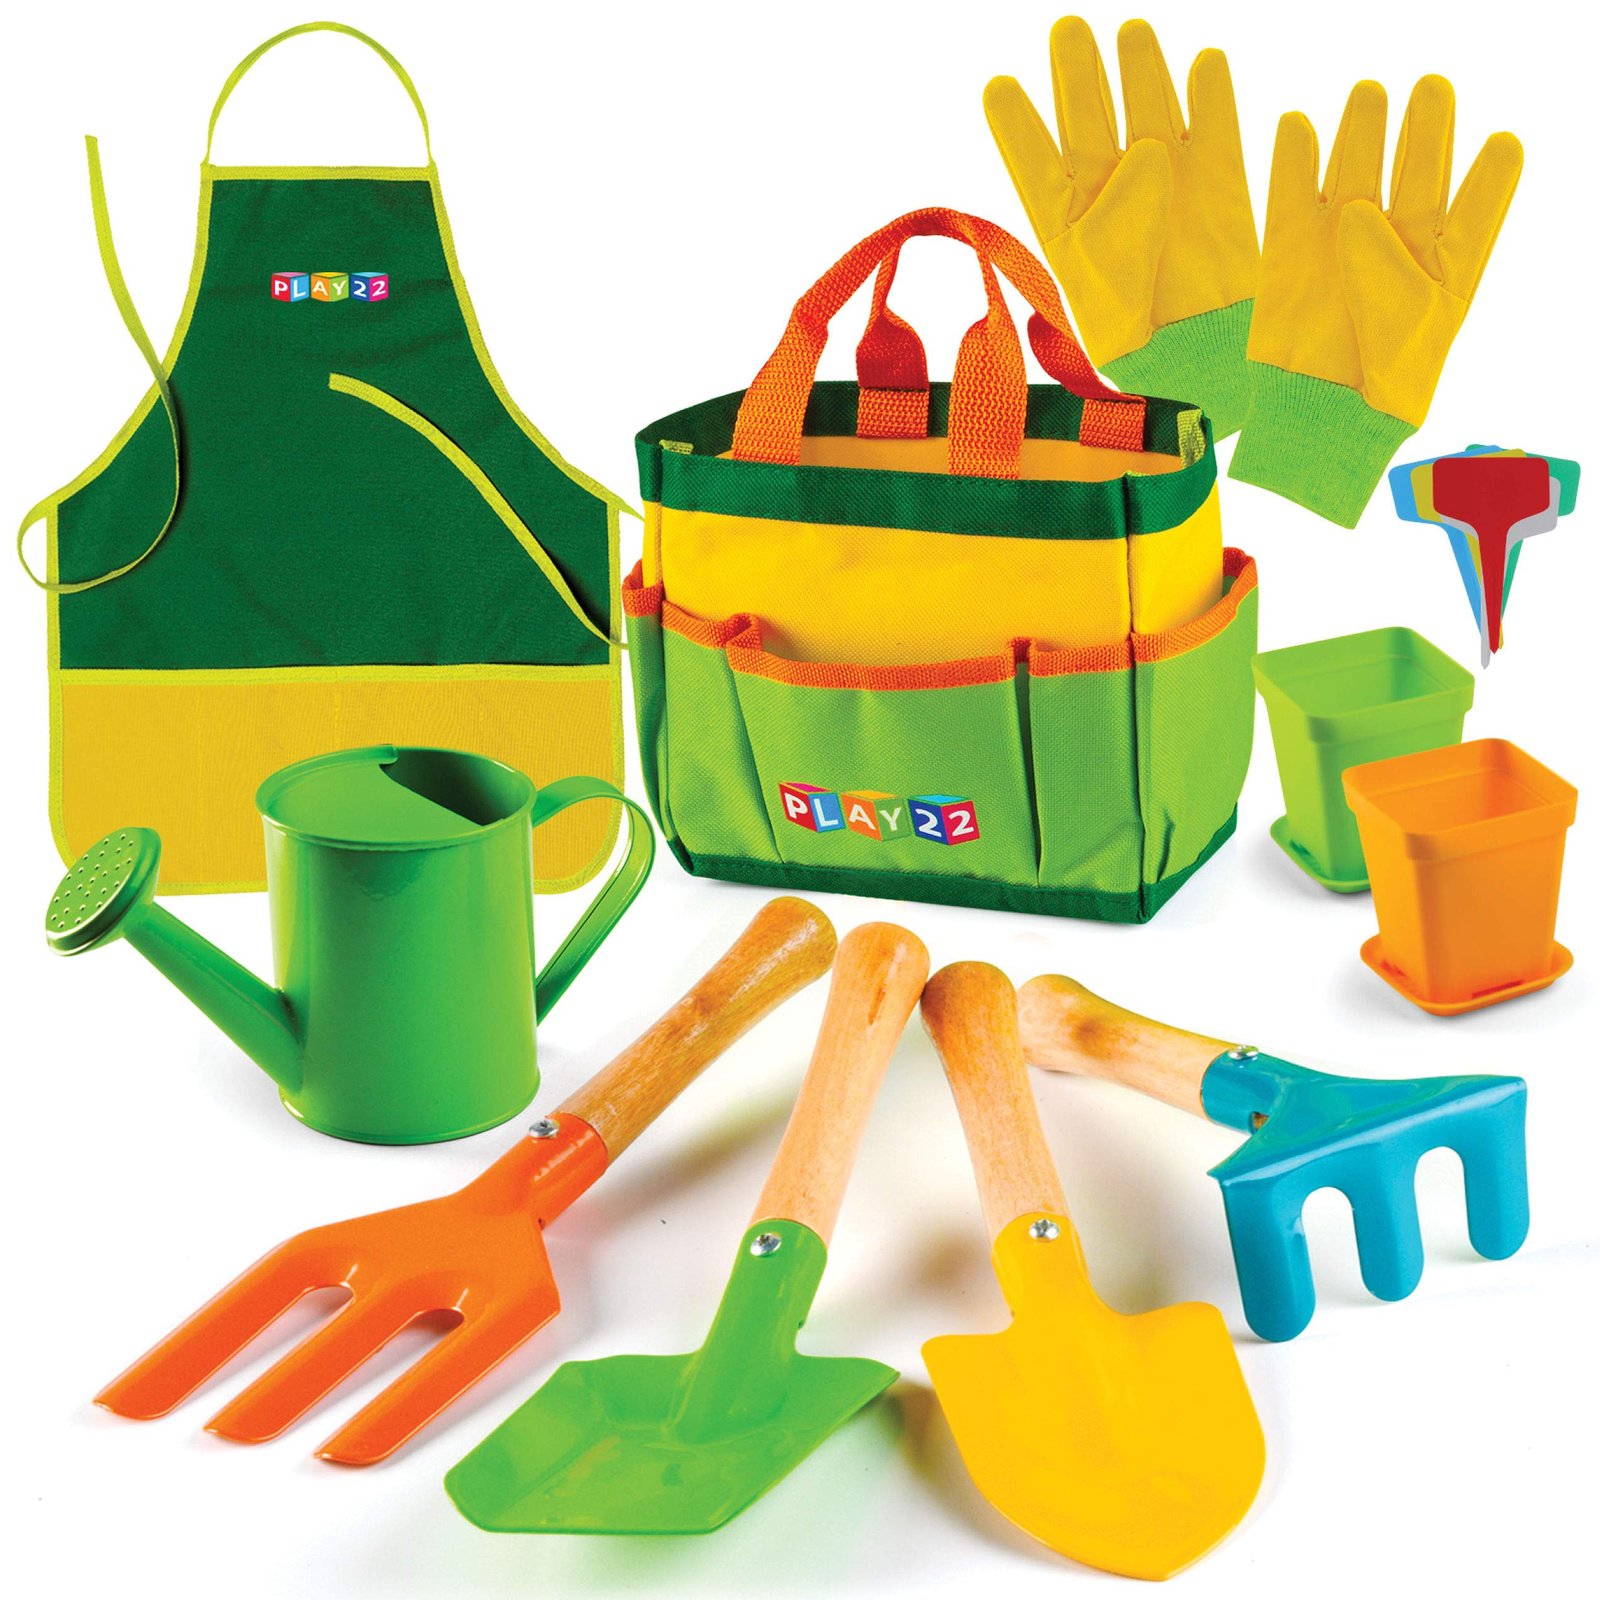 Play22 Kids Gardening Tool Set